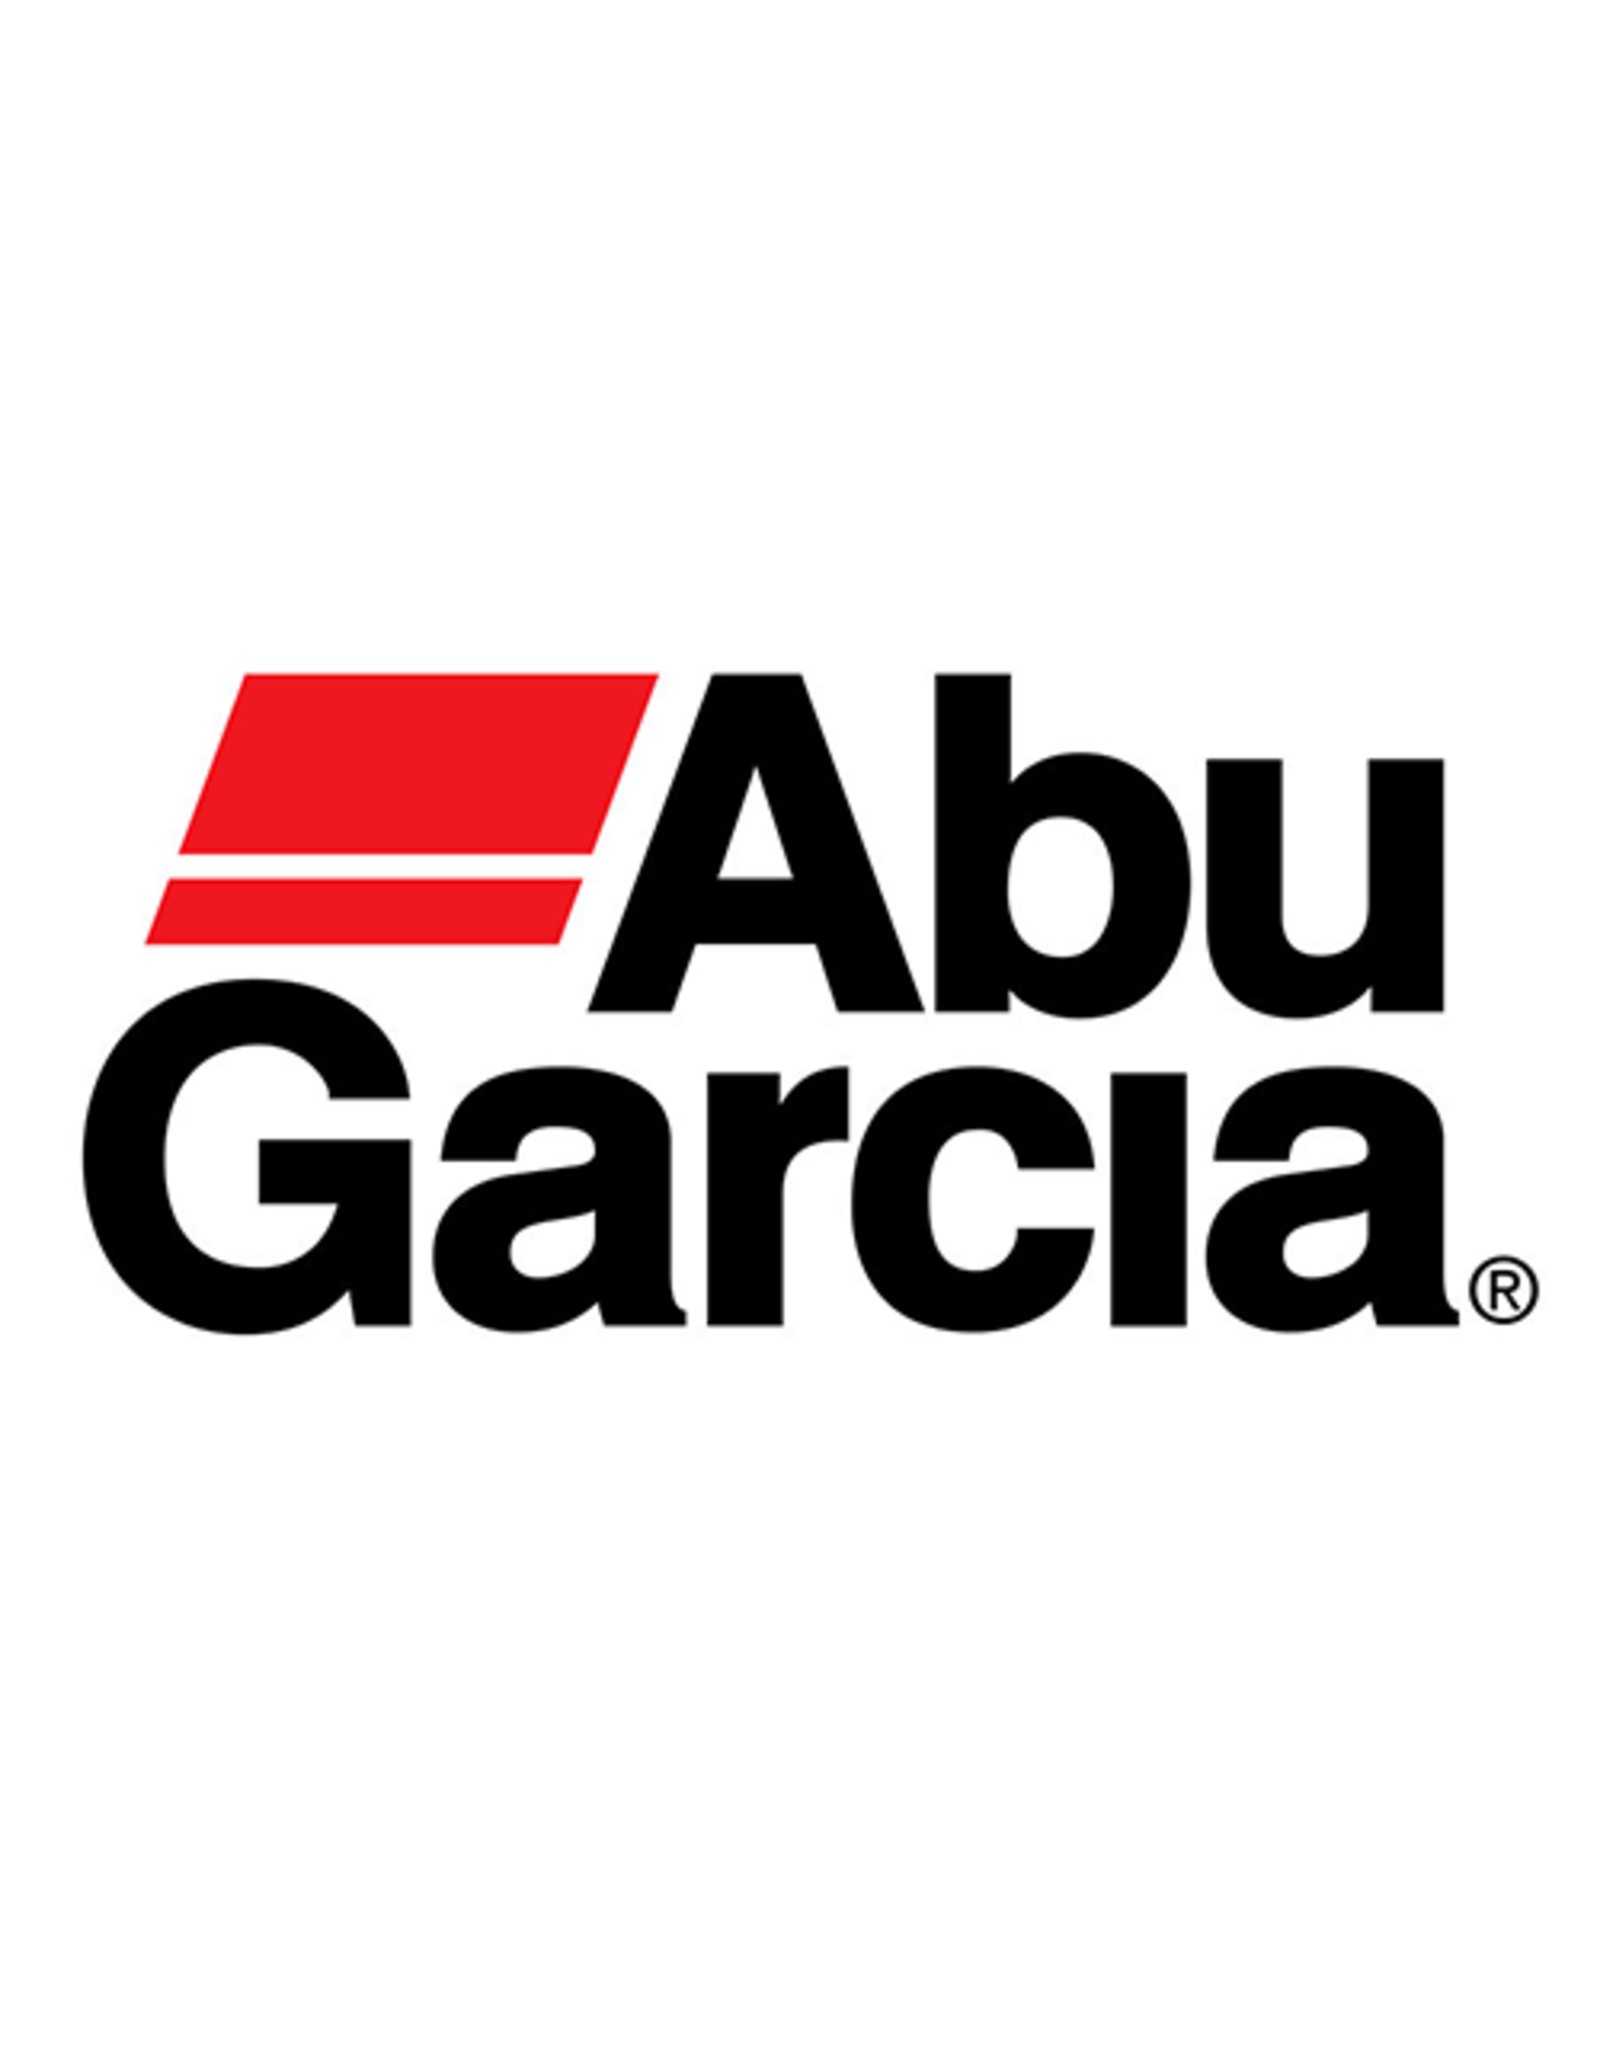 Abu Garcia 1380560 HANDLE NUT COVER